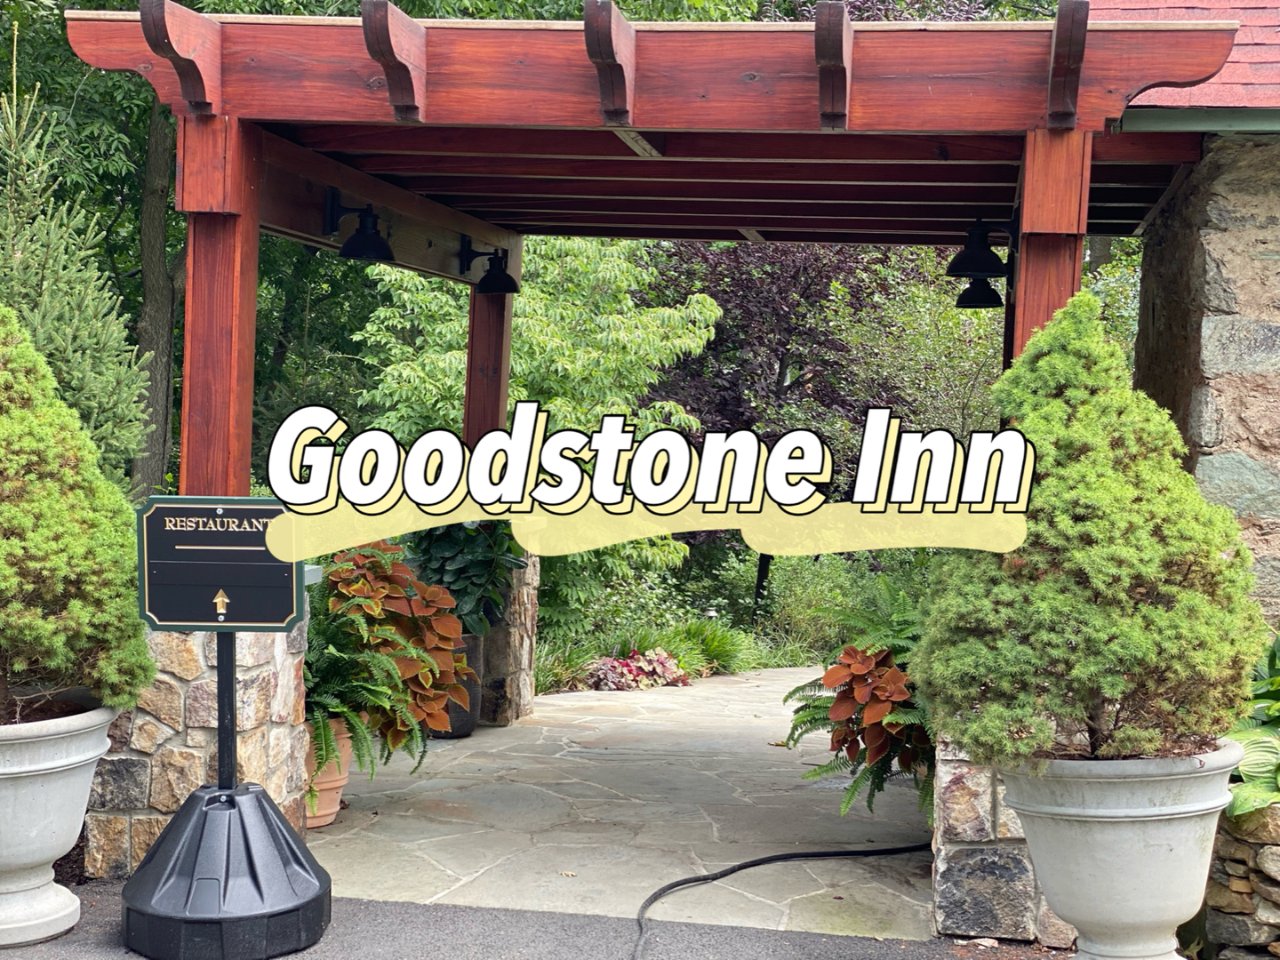 The Goodstone Inn & Estate